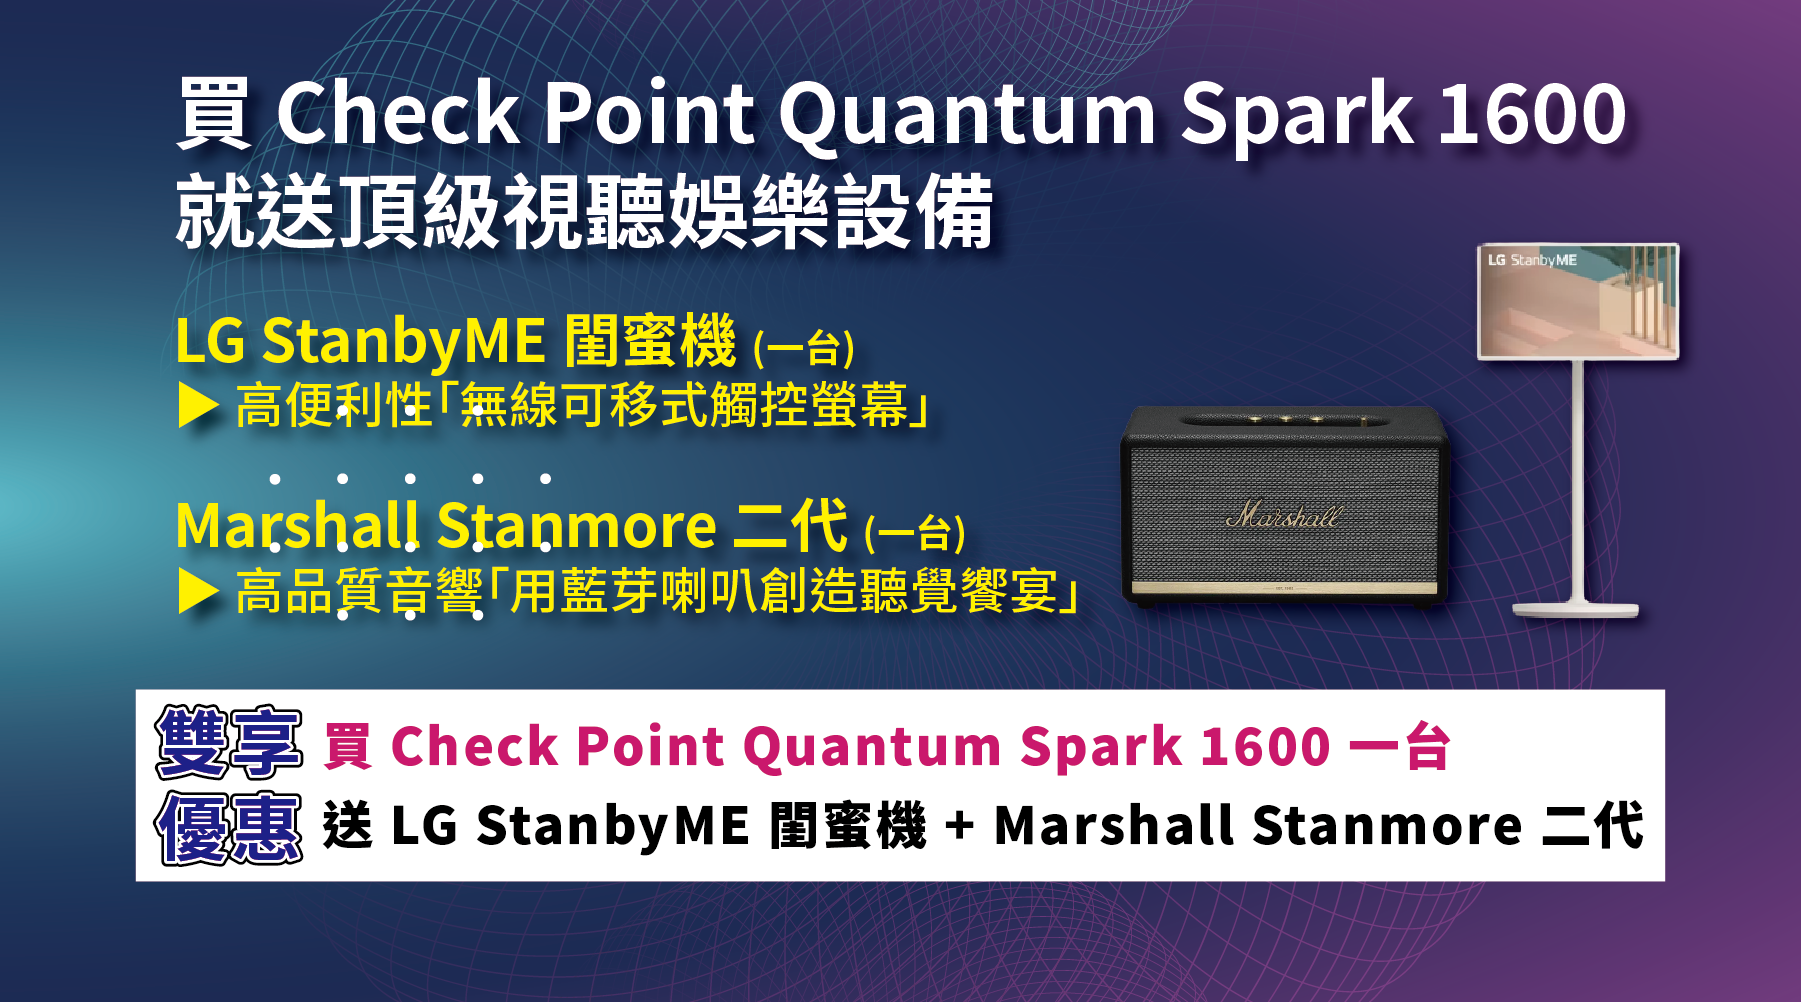 【經銷商專屬】頂級視聽設備組大放送！買 Check Point Quantum Spark 1600，立即送 LG閨蜜機及 Marshall 藍芽喇叭各一台 ！